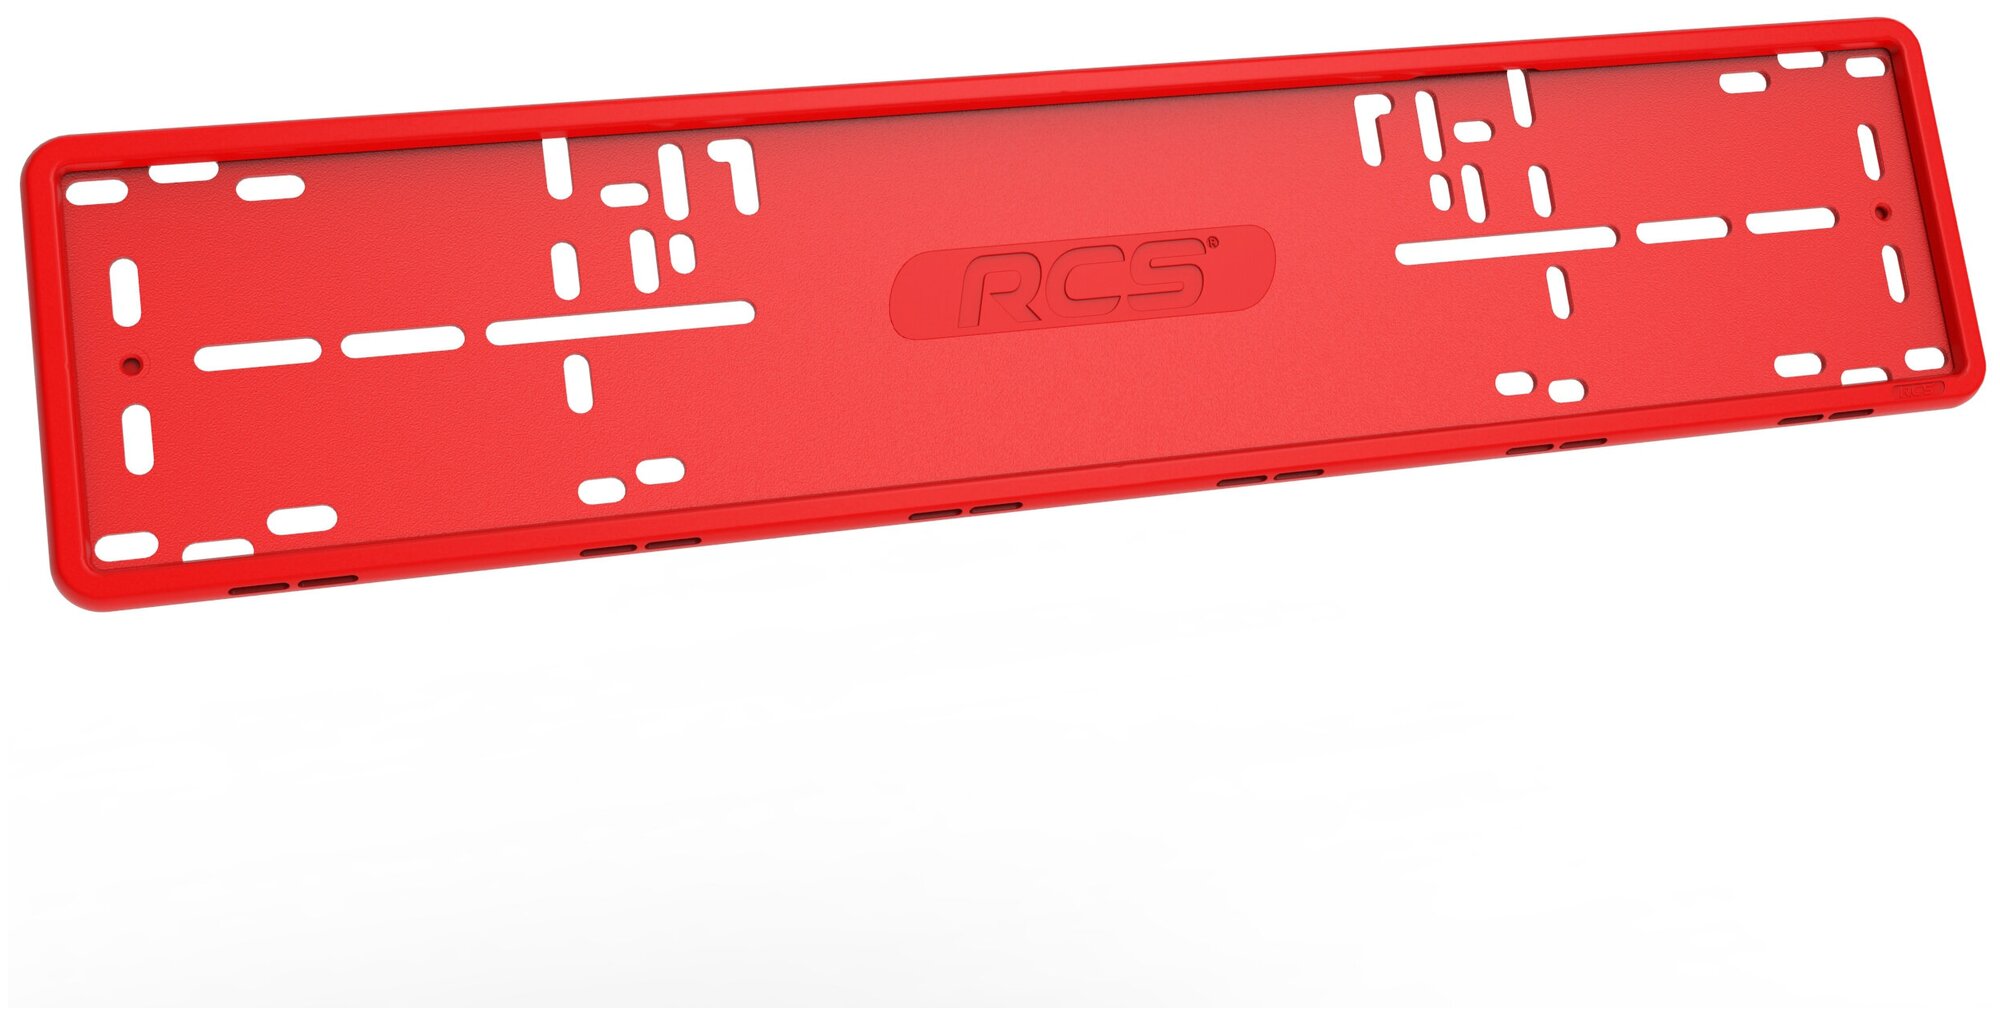 Рамка RCS красная силиконовая для номера автомобиля, последняя версия 4.0